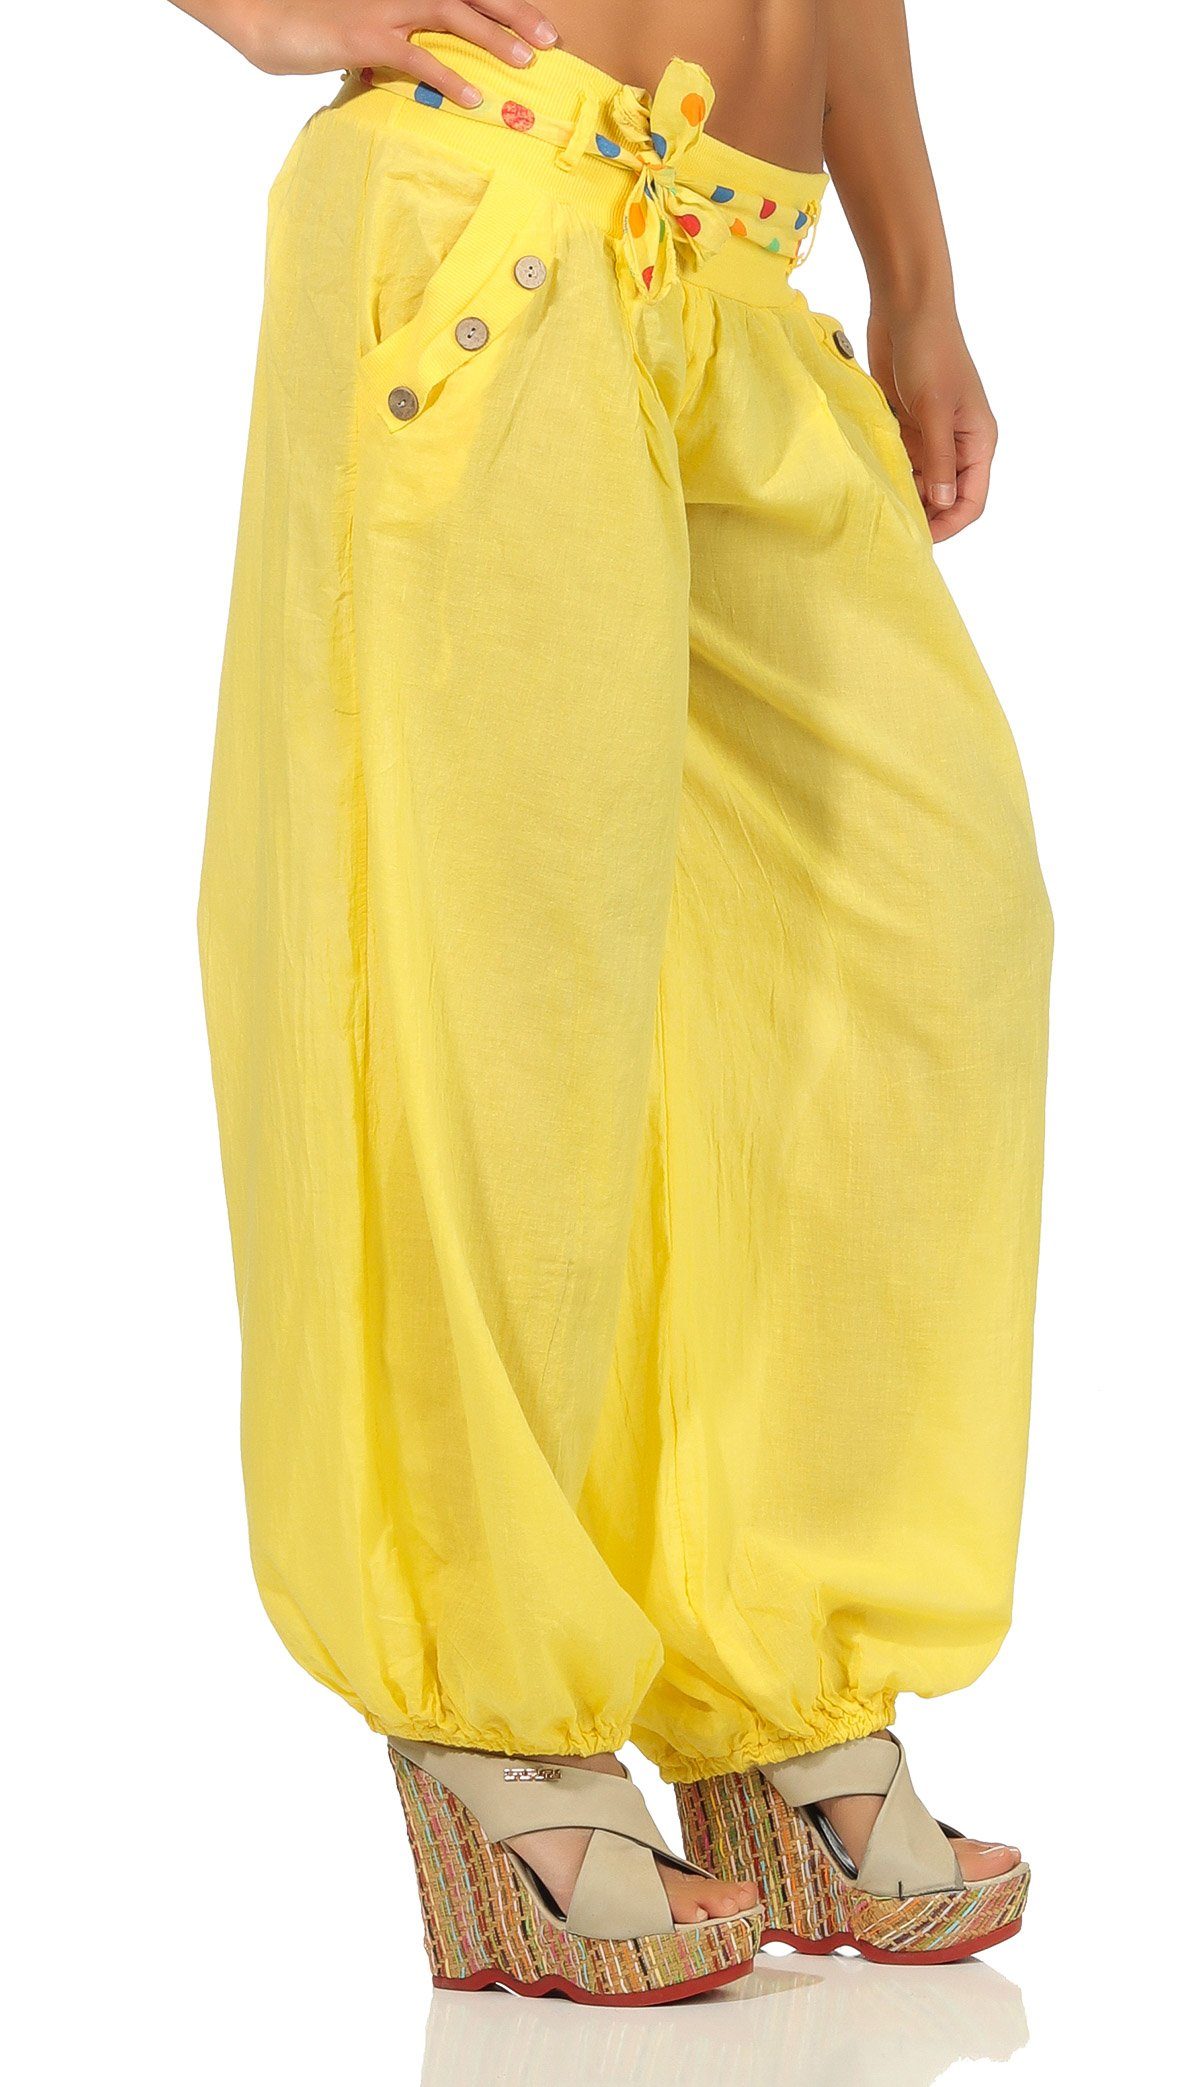 than 3417 gelb more fashion Einheitsgröße farblich Stoffgürtel malito Haremshose mit passendem